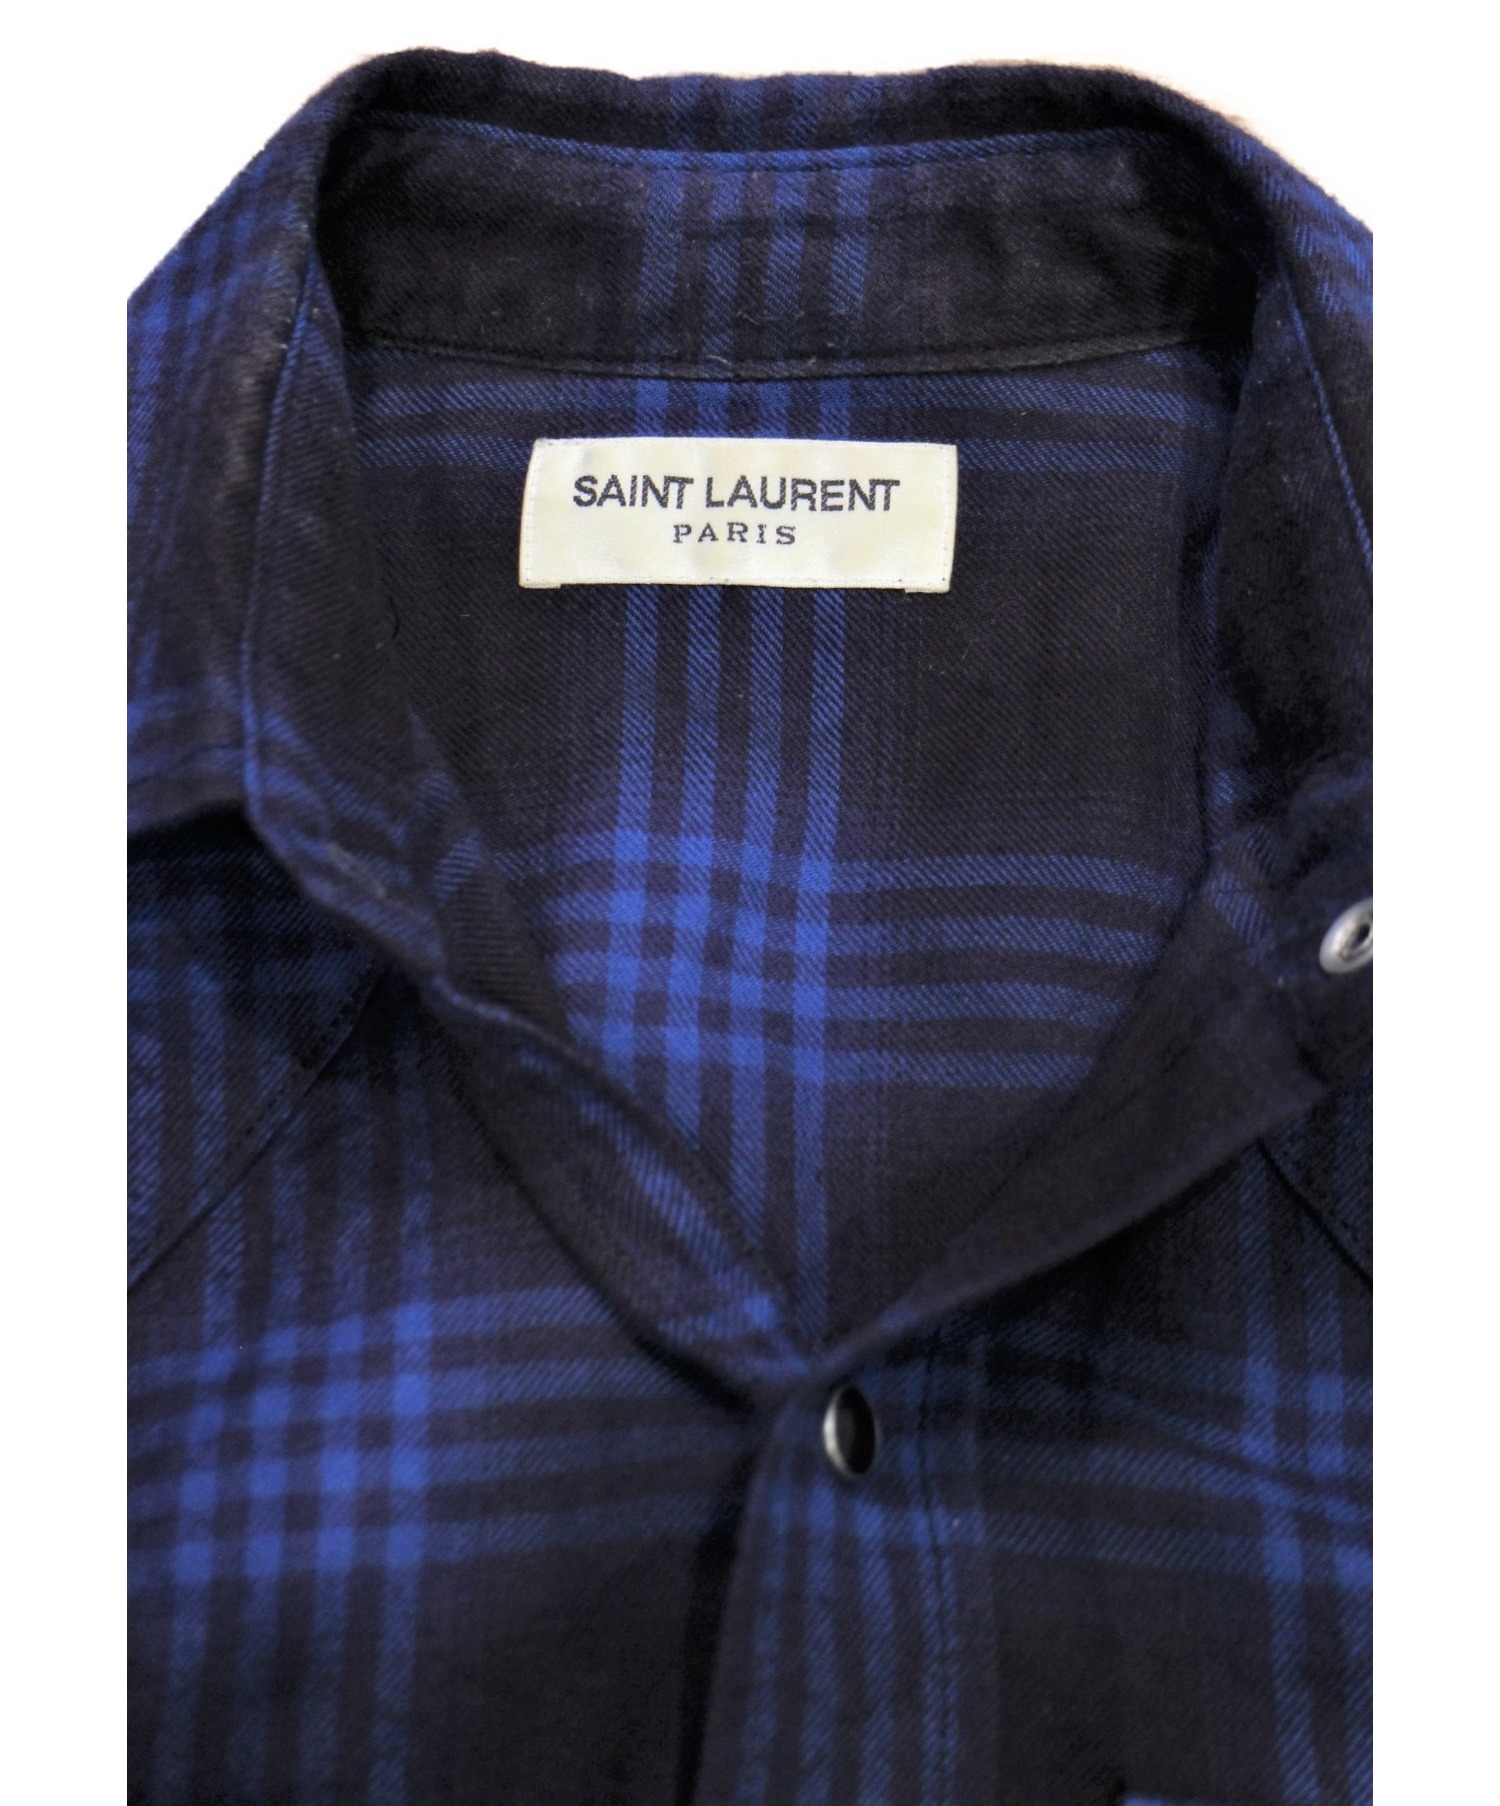 Saint Laurent Paris (サンローランパリ) ウエスタンチェックシャツ ネイビー サイズ:S チェック